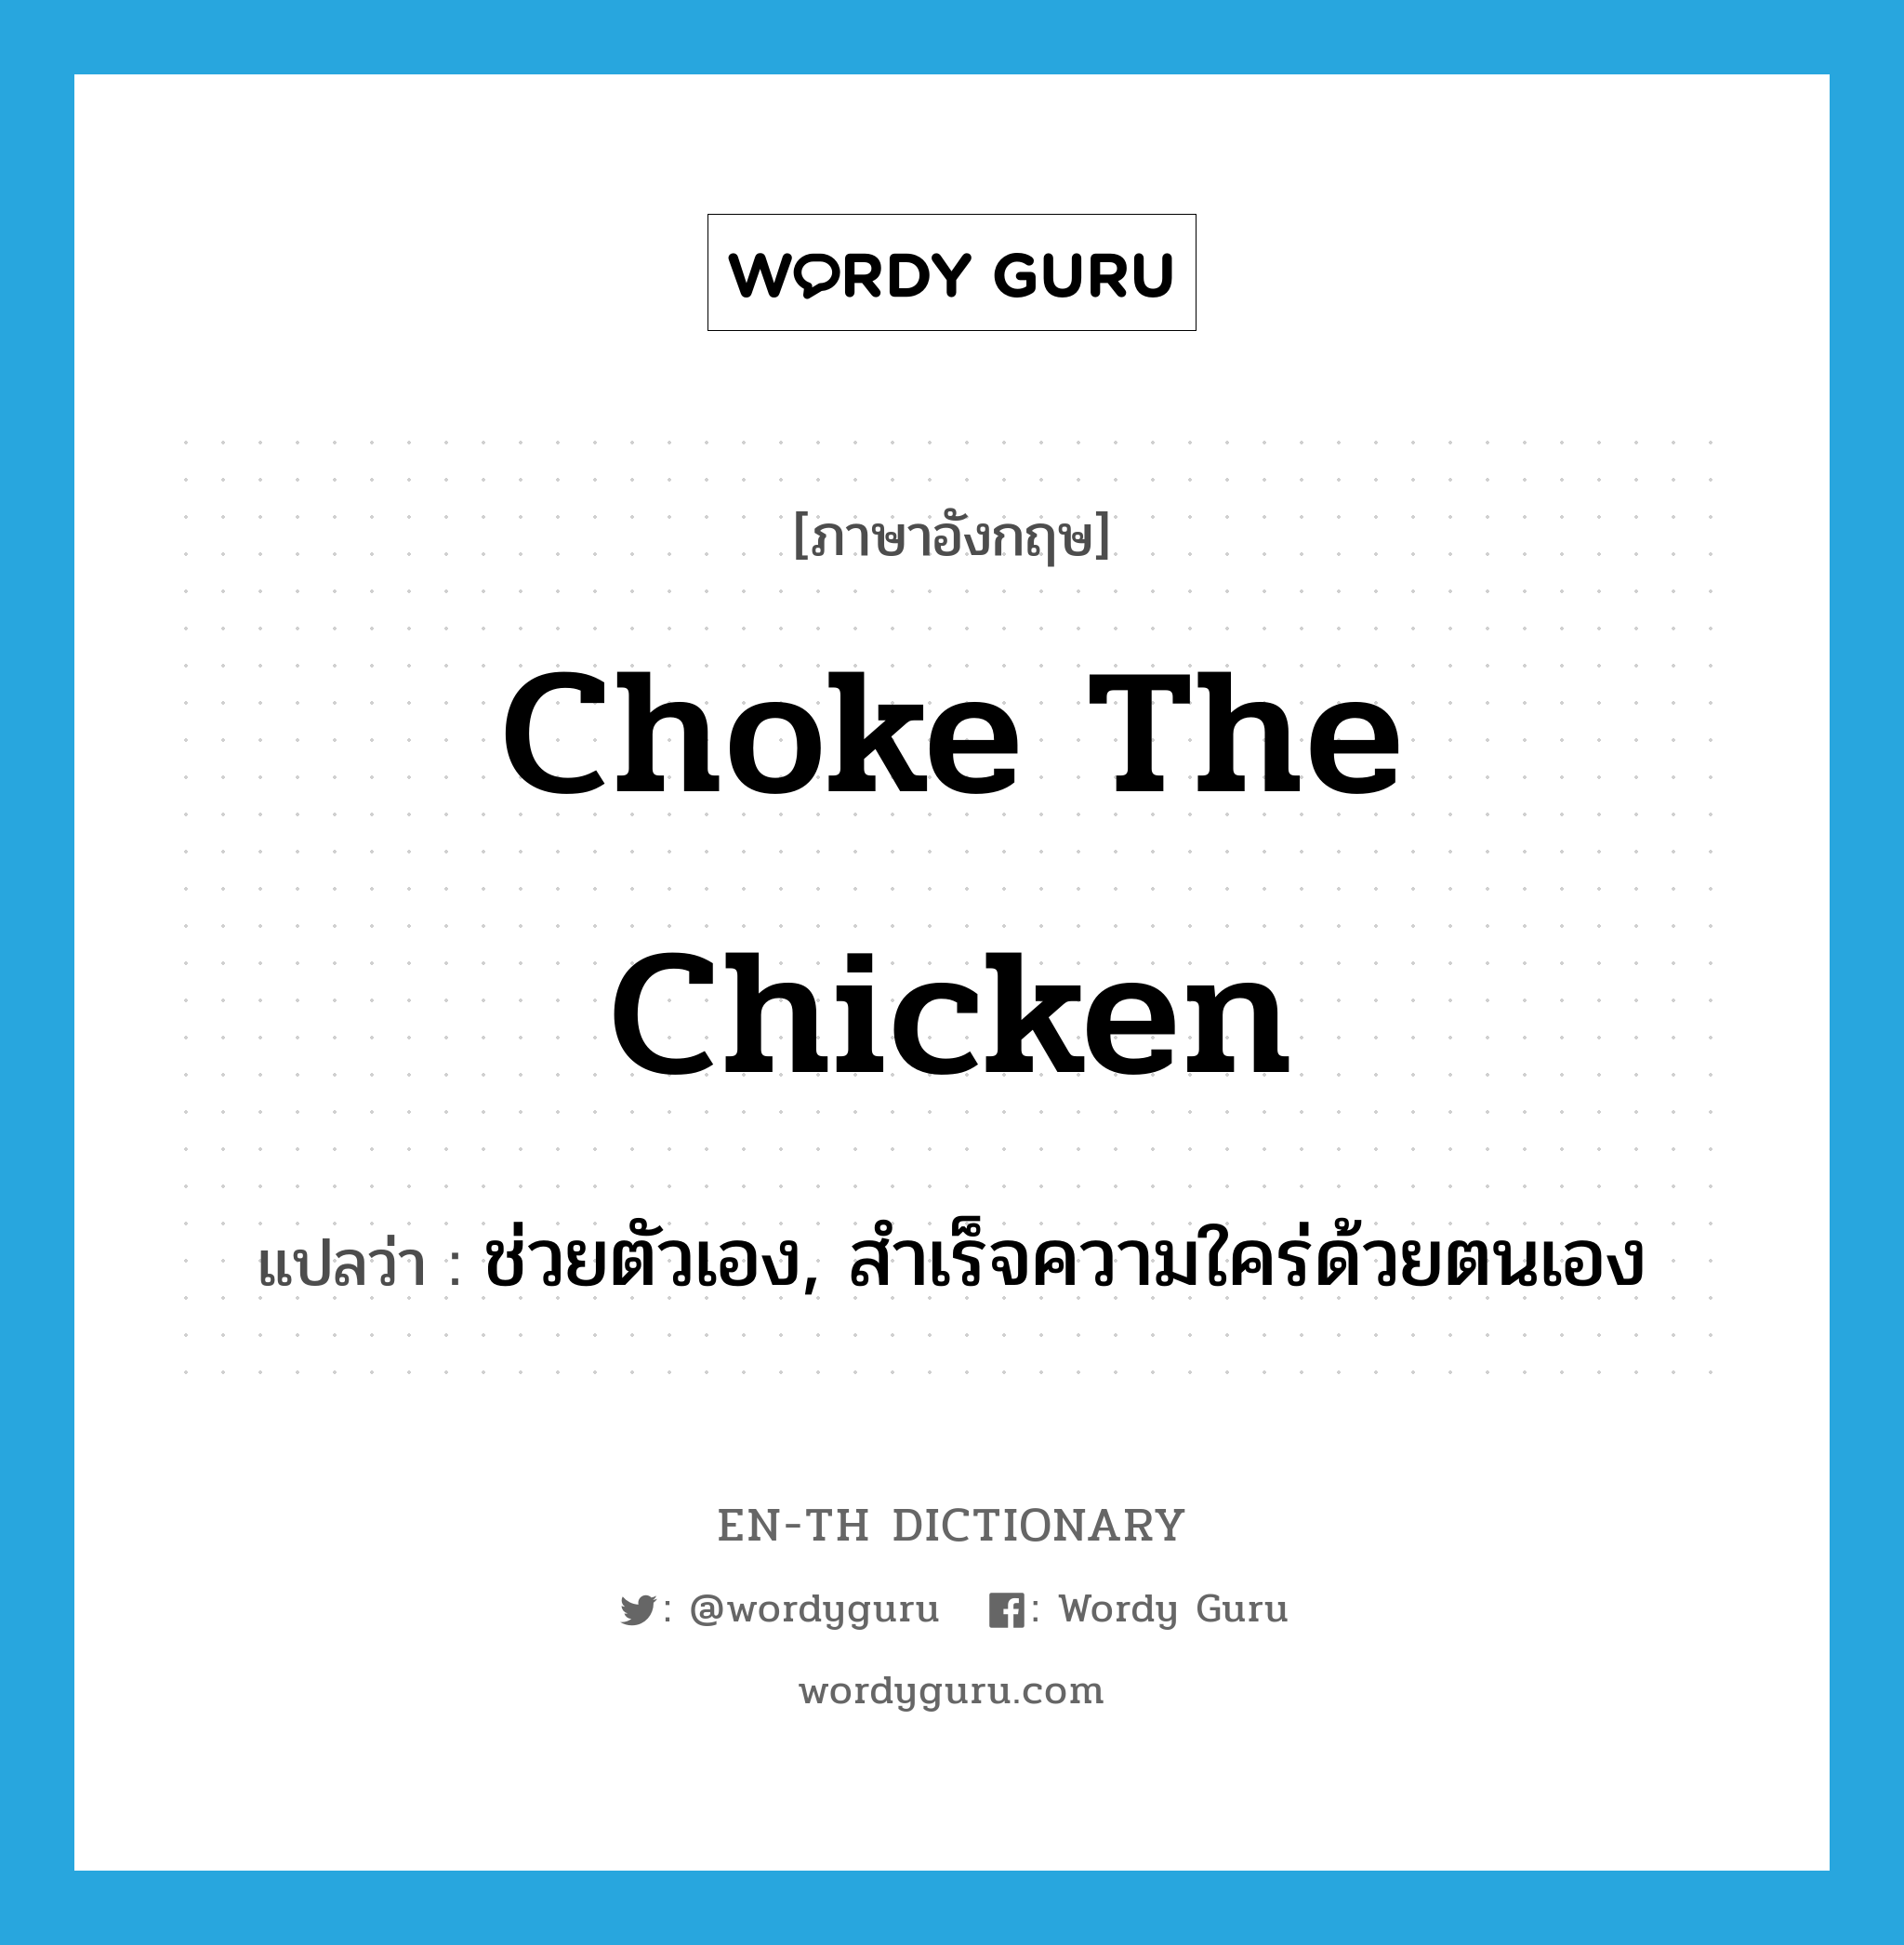 ช่วยตัวเอง, สำเร็จความใคร่ด้วยตนเอง ภาษาอังกฤษ?, คำศัพท์ภาษาอังกฤษ ช่วยตัวเอง, สำเร็จความใคร่ด้วยตนเอง แปลว่า choke the chicken ประเภท SL หมวด SL